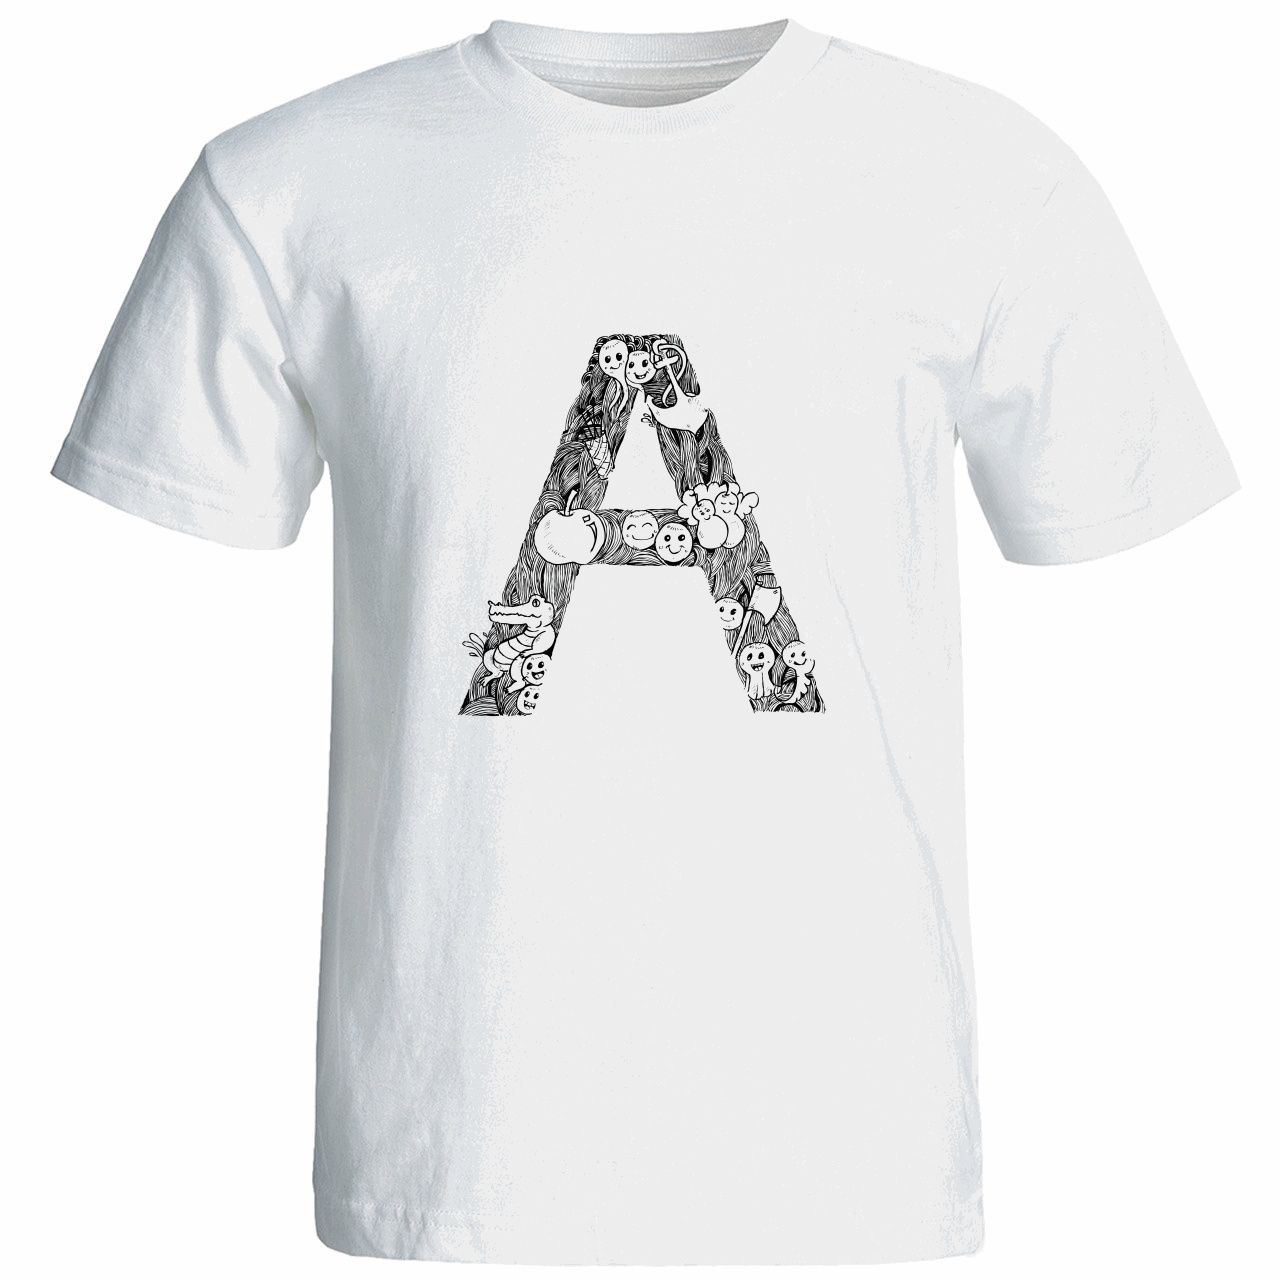 تی شرت آستین کوتاه زنانه شین دیزاین طرح حروف اول اسم A کد 4496 -  - 1